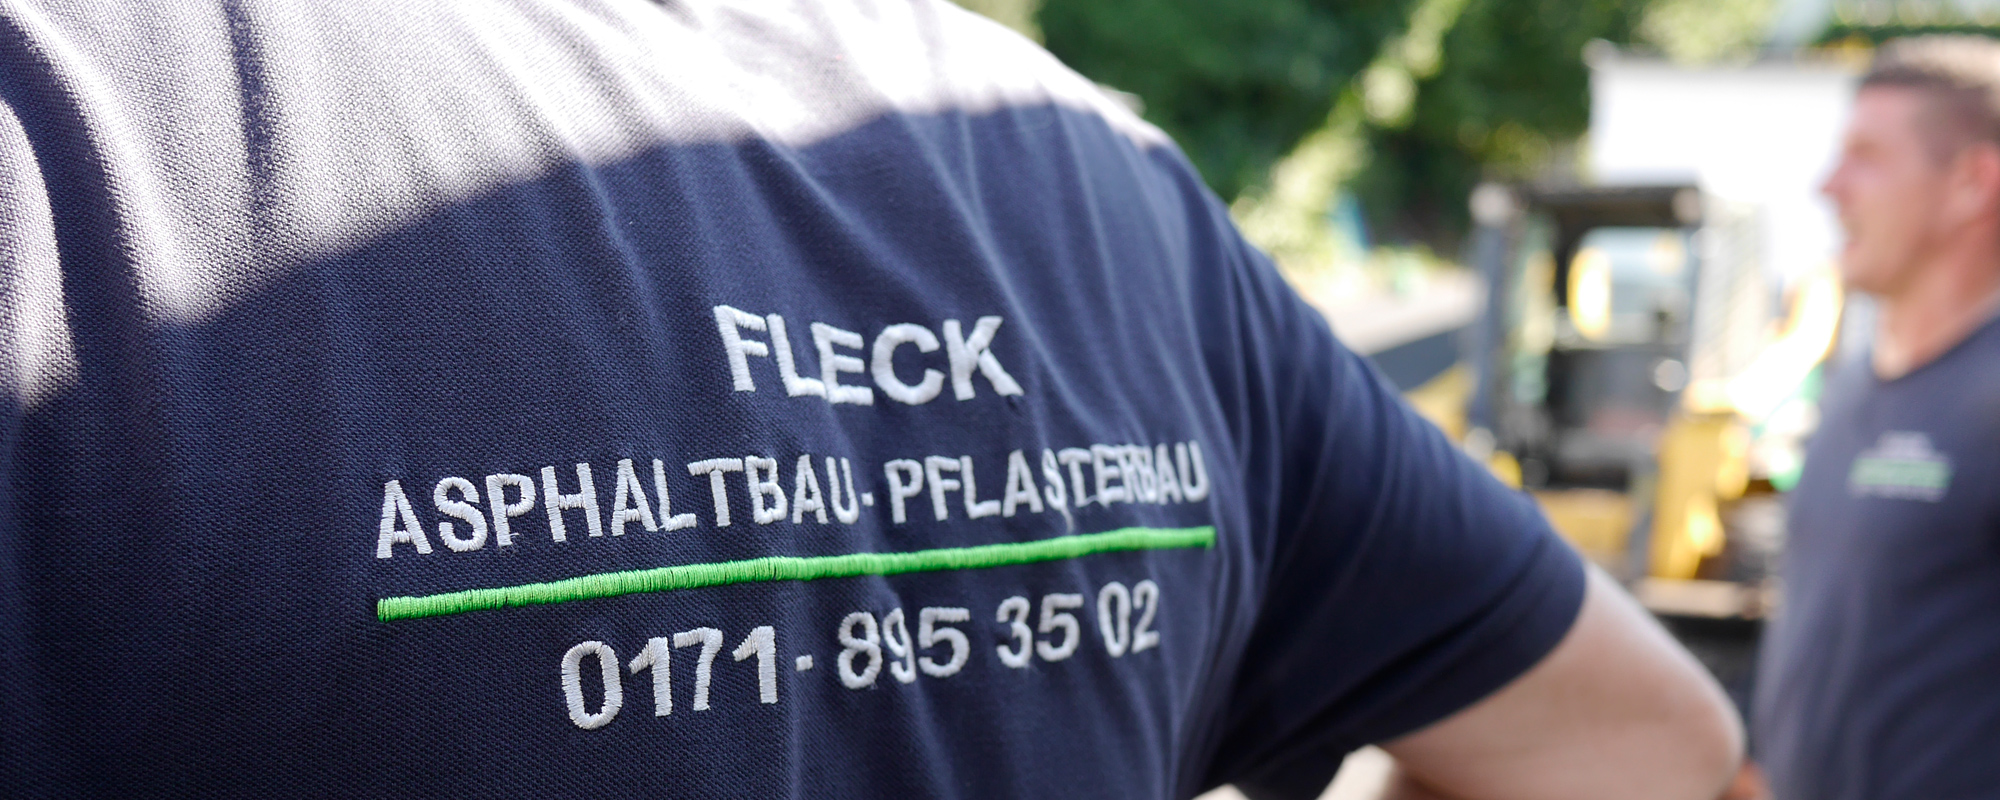 FLECK-Asphaltbau-GmbH-Steinarbeiten-2